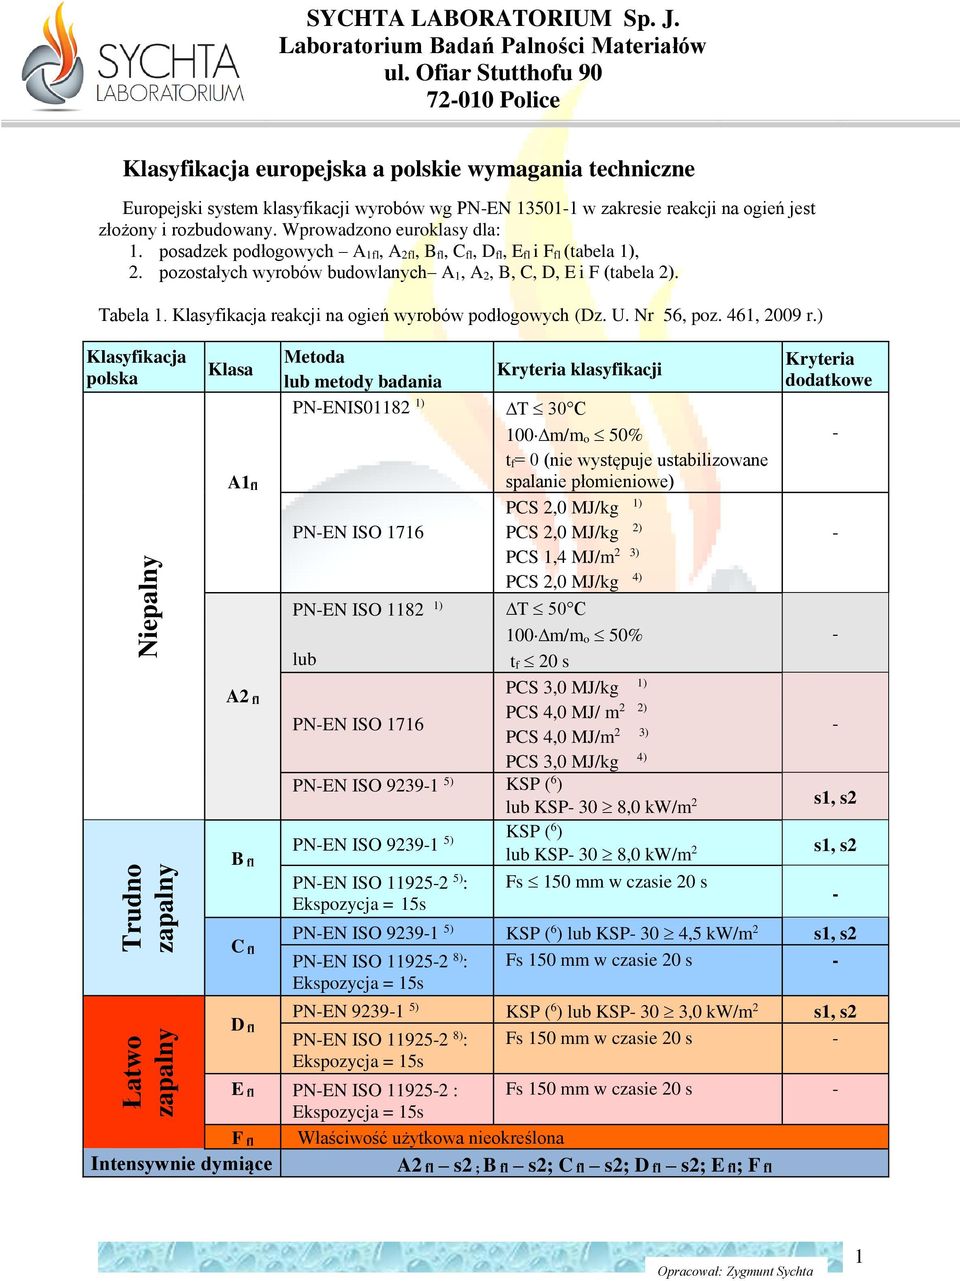 Klasyfikacja reakcji na ogień wyrobów podłogowych (Dz. U. Nr 56, poz. 461, 2009 r.